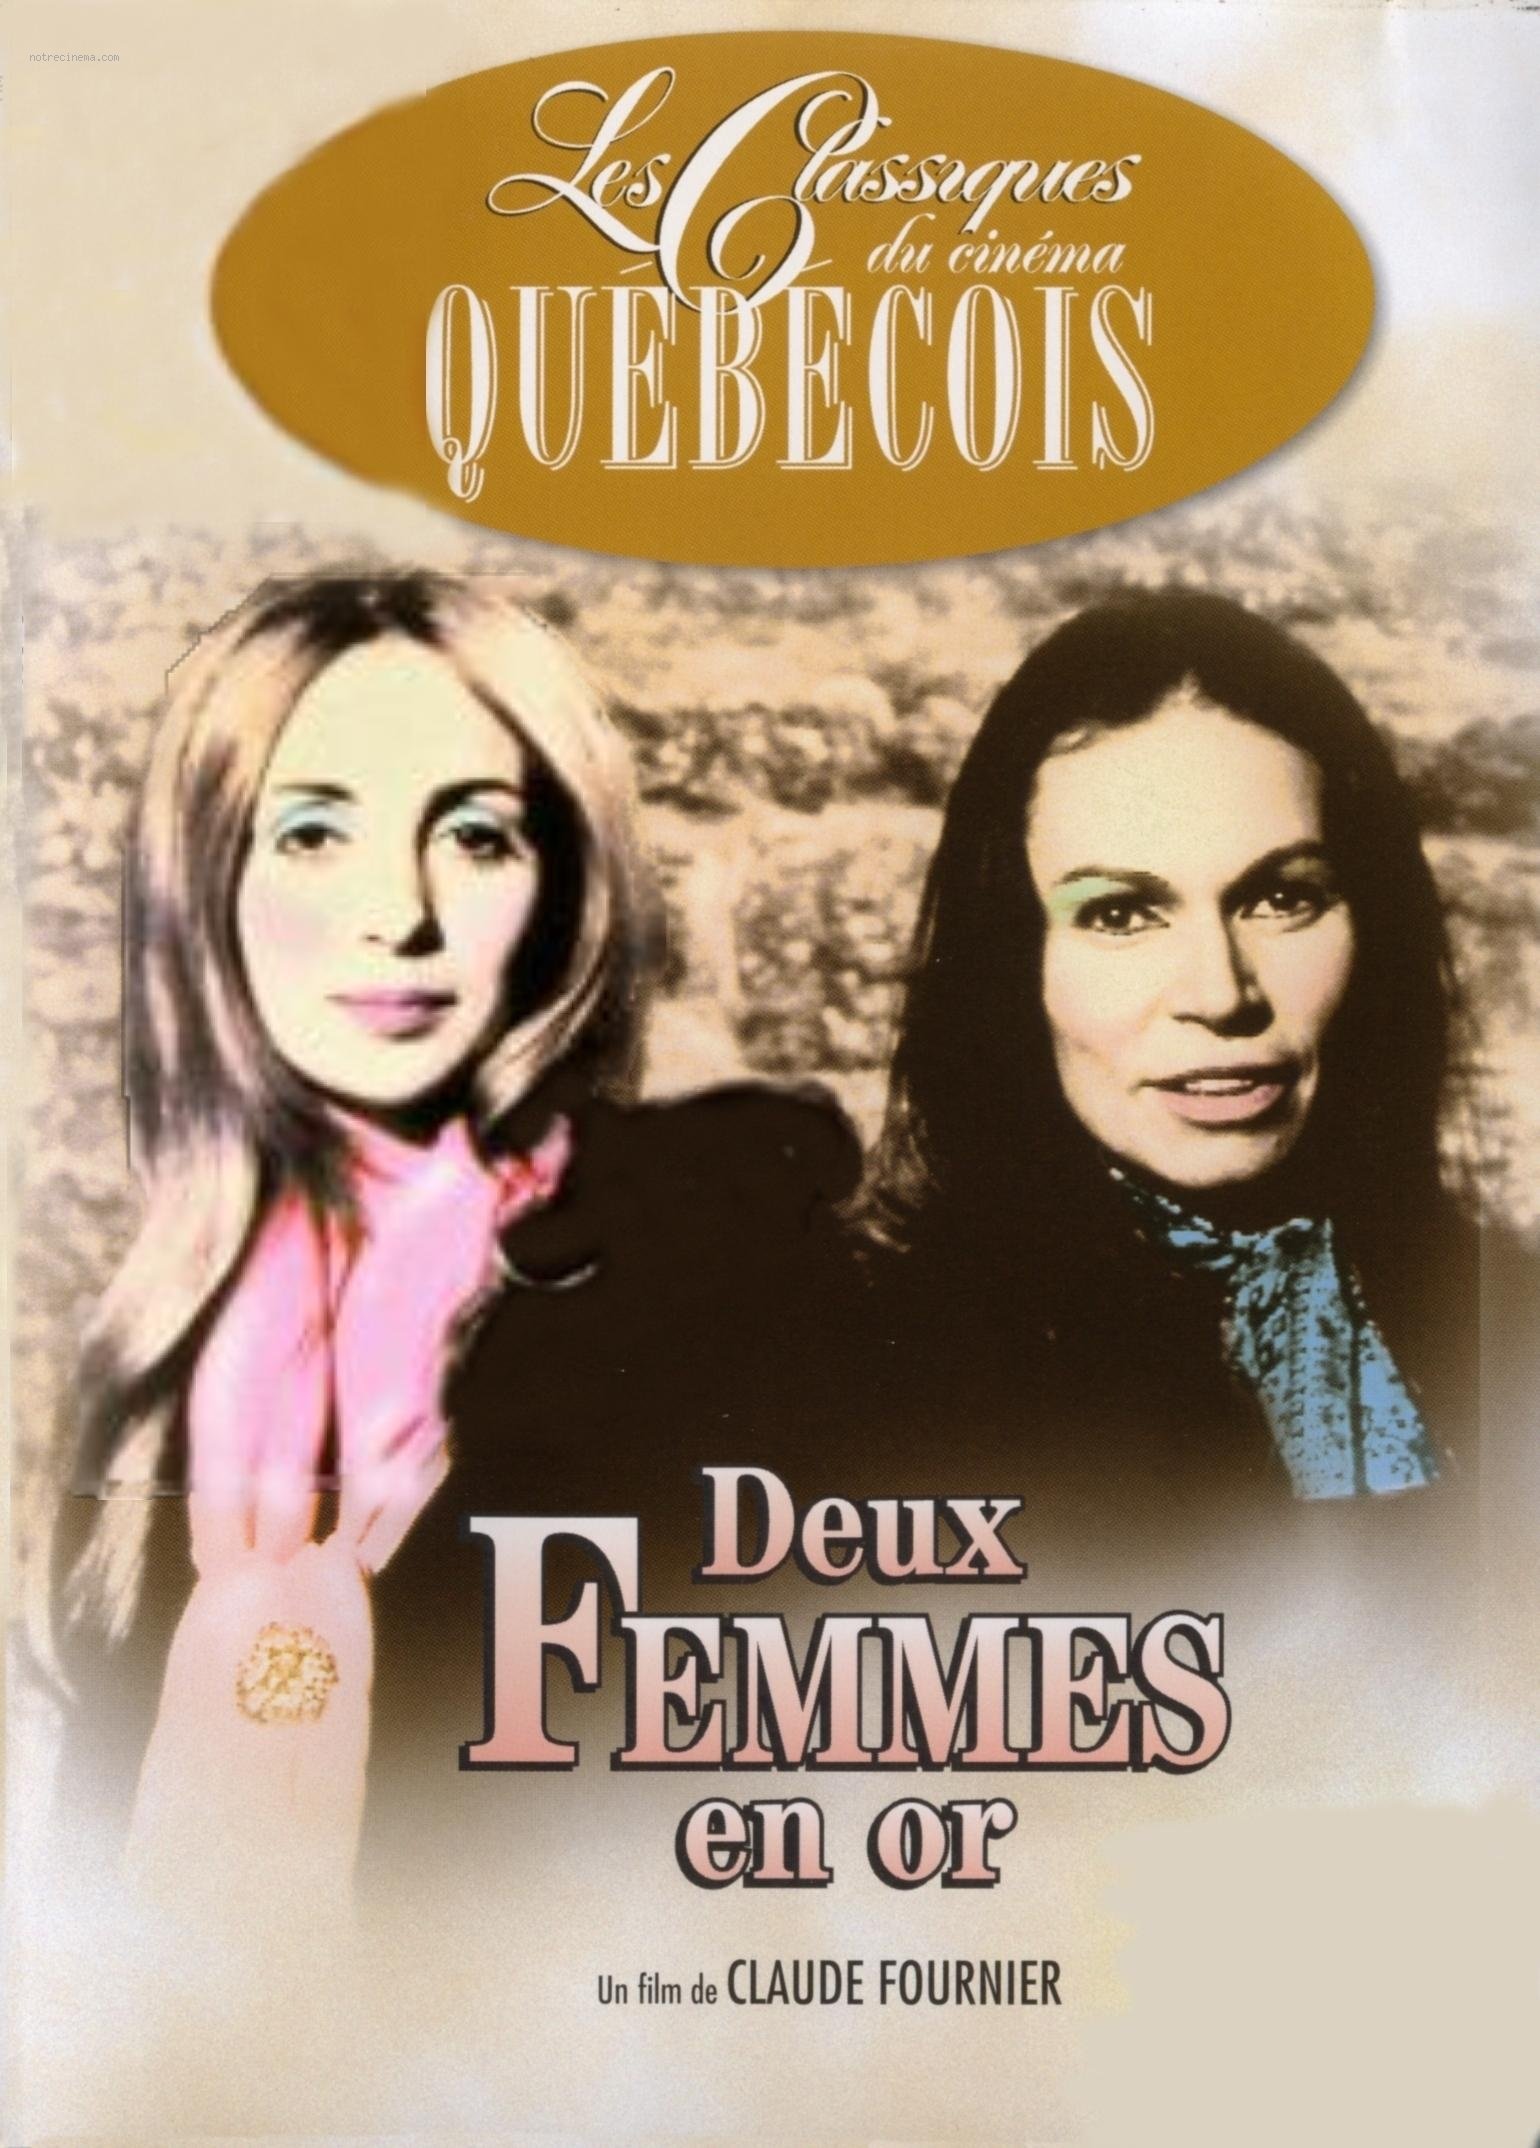 Poster of the movie Deux femmes en or